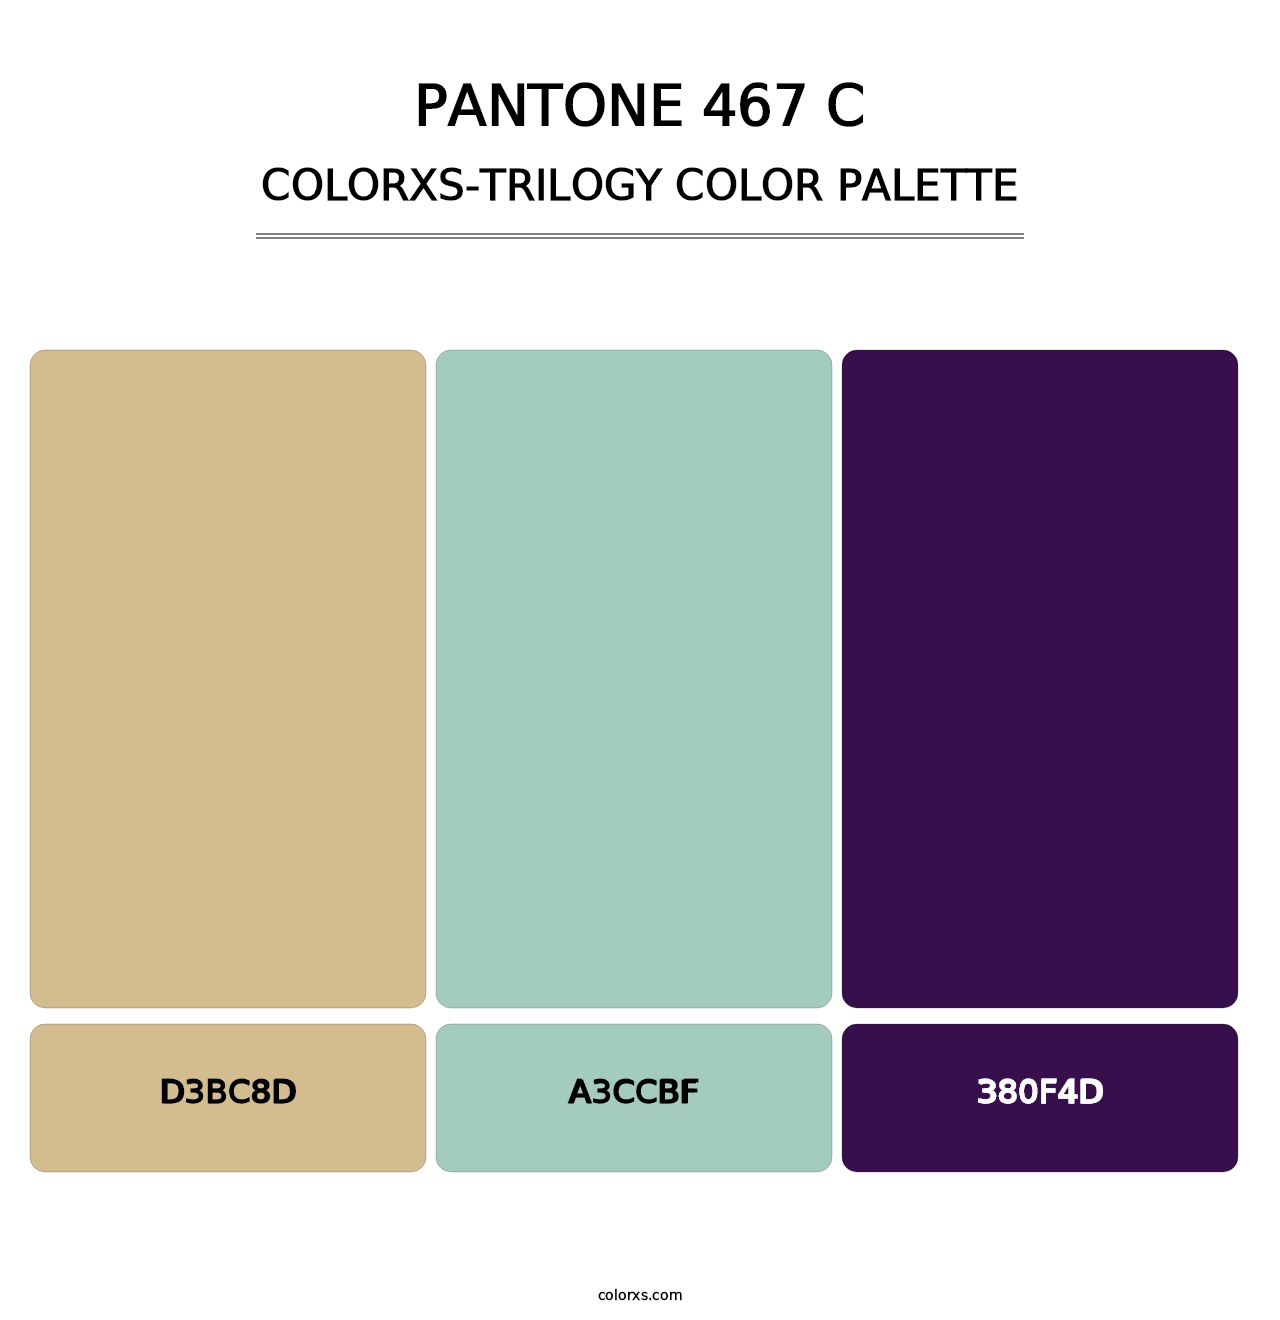 PANTONE 467 C - Colorxs Trilogy Palette